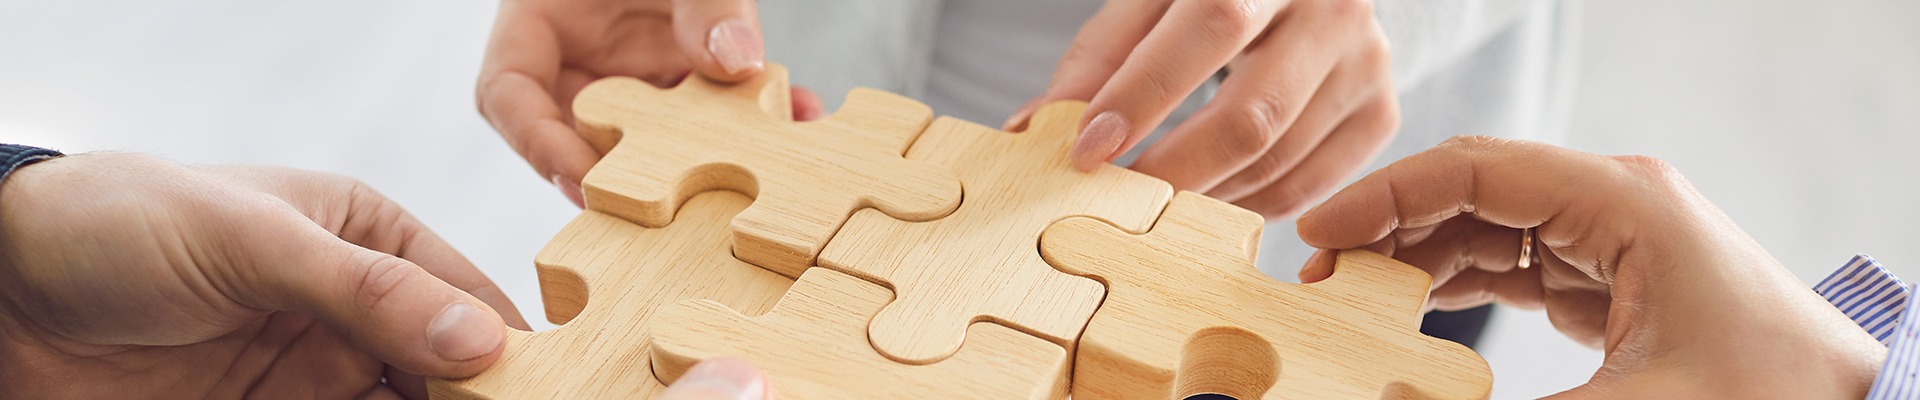 Das Bild die Hände mehrerer Personen, die gemeinsam Puzzle-Teile aus Holz zusammenfügen.